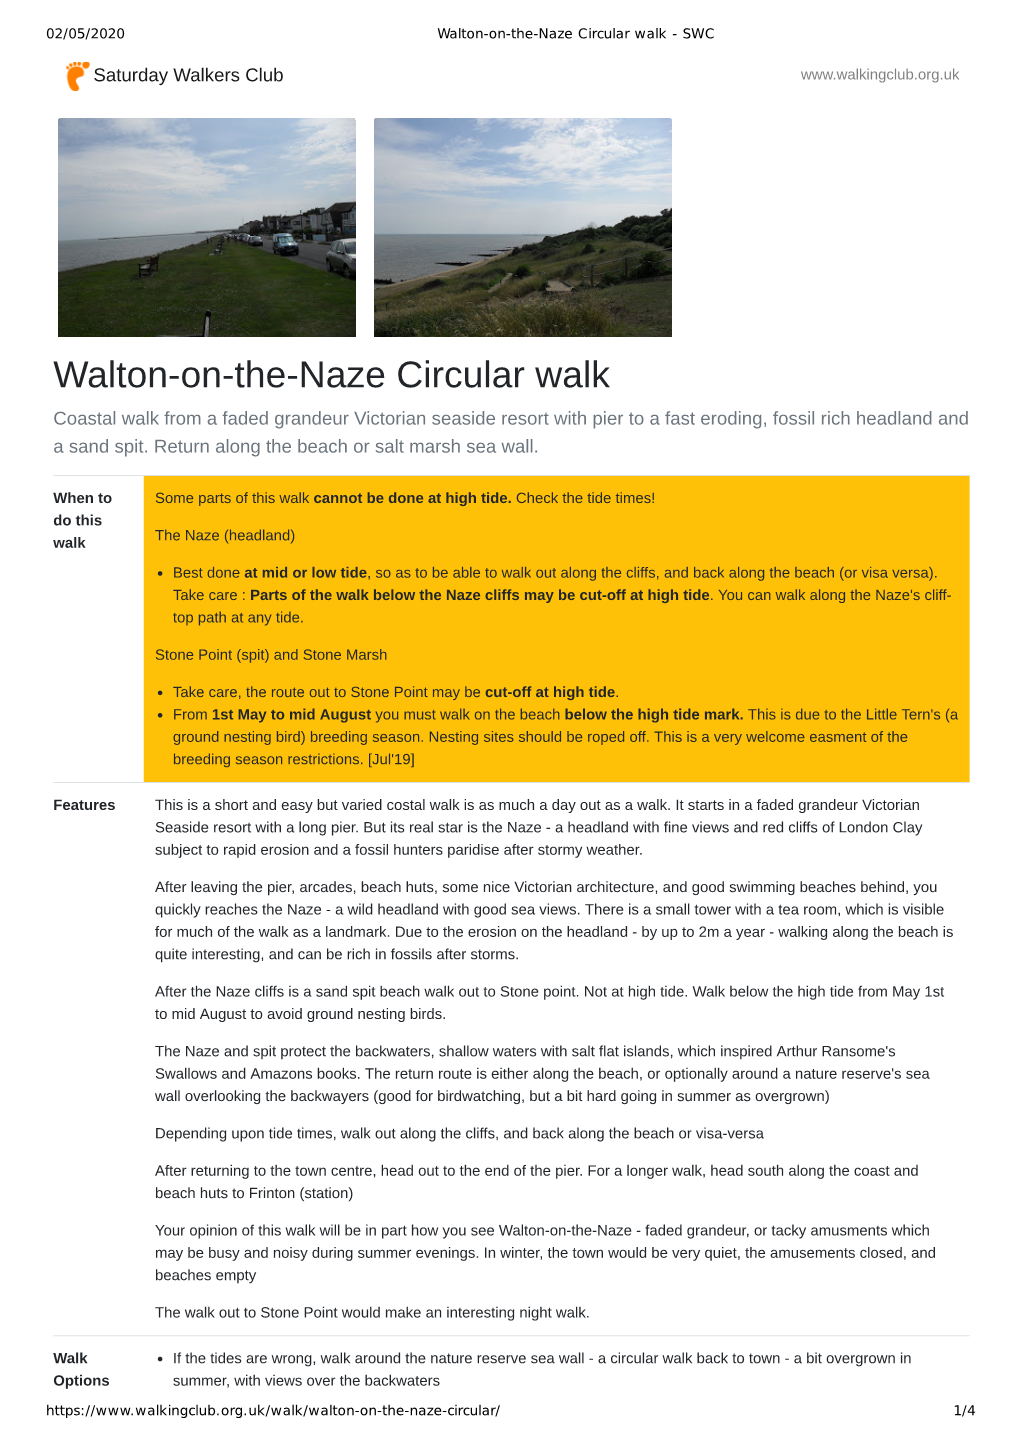 Walton-On-The-Naze Circular Walk - SWC